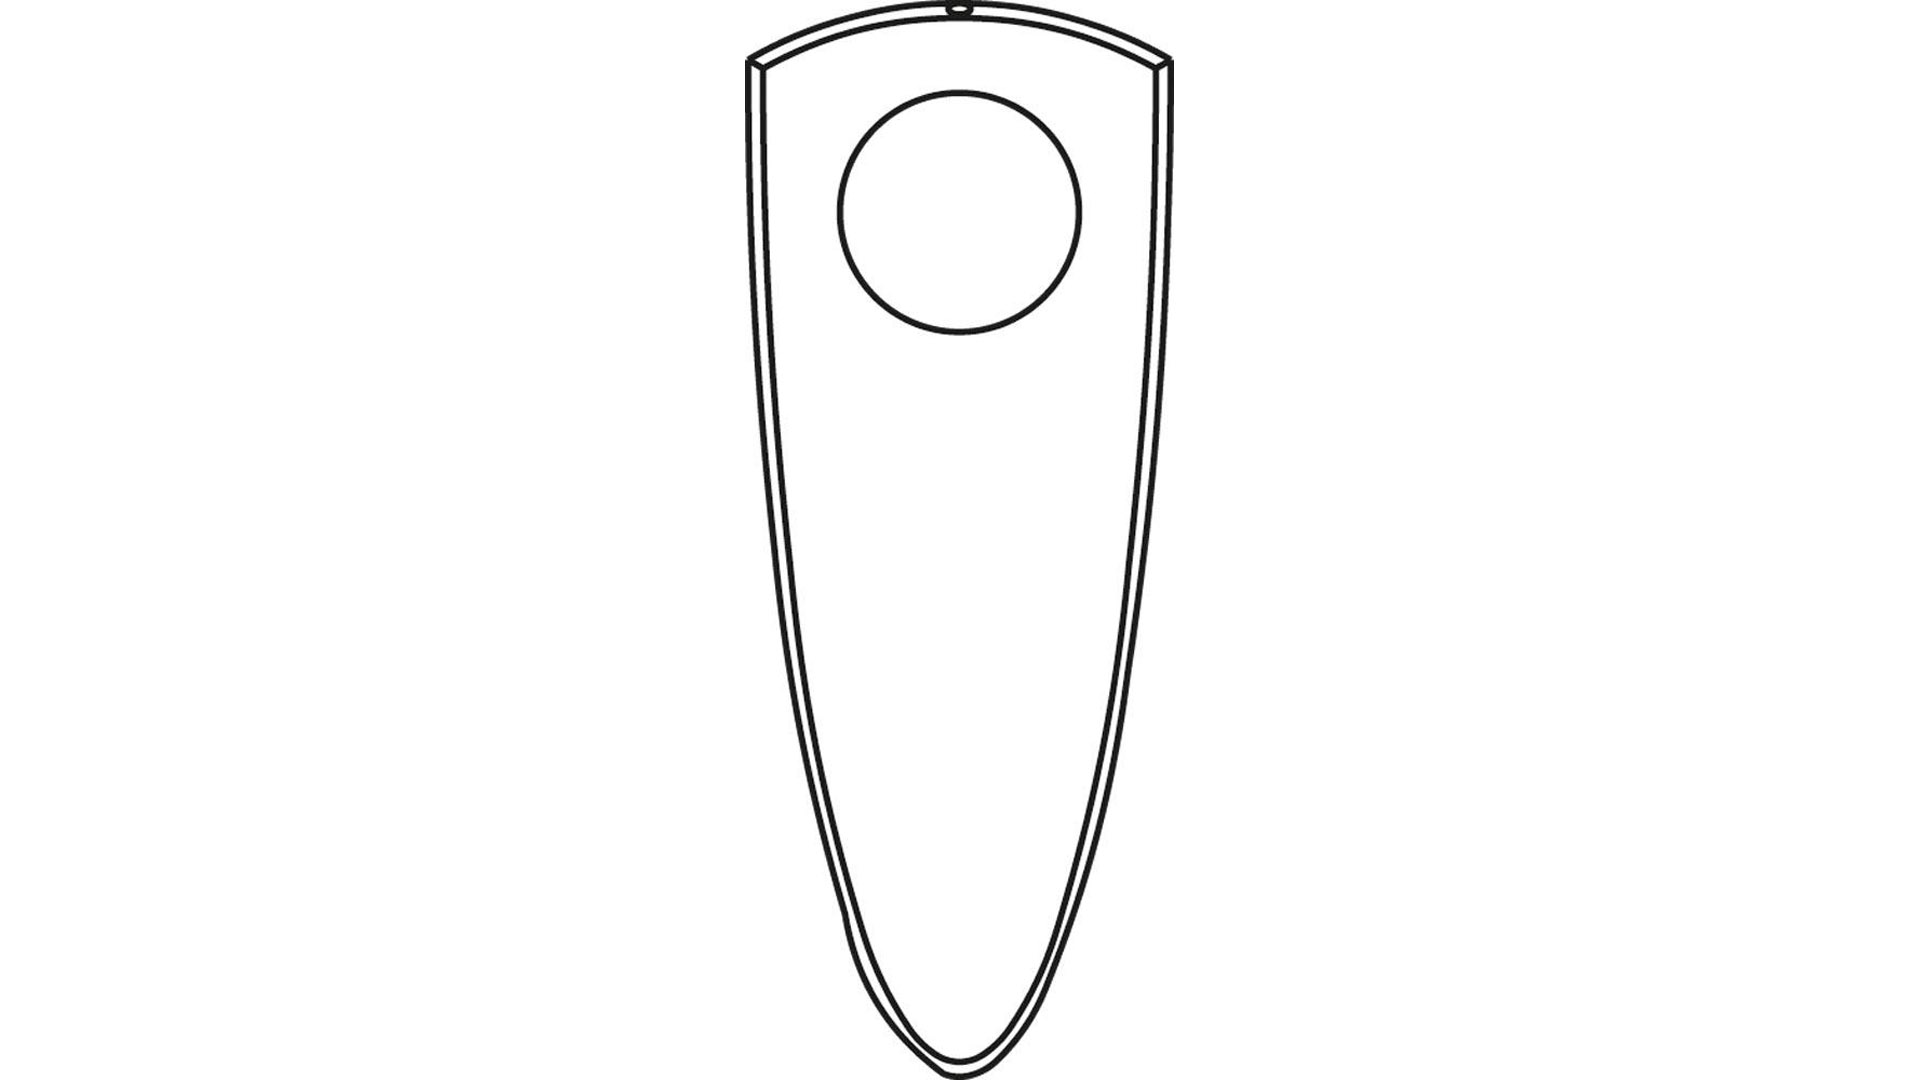 Türschutz Schlüsselschild, aus Kunststoff, zur Nummernschildaufnahme für Zylinderschlösser